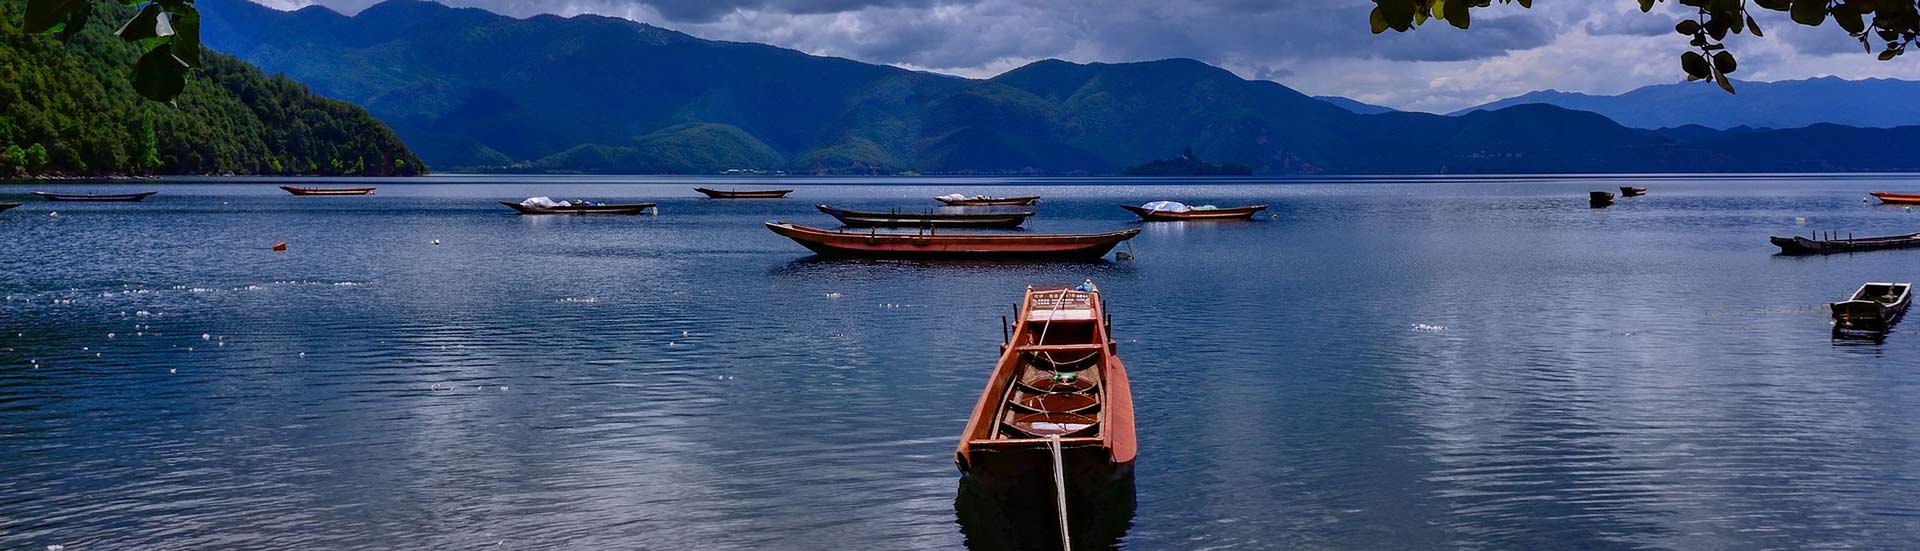 6 Days Tour to Kunming -Lijiang -Lugu Lake